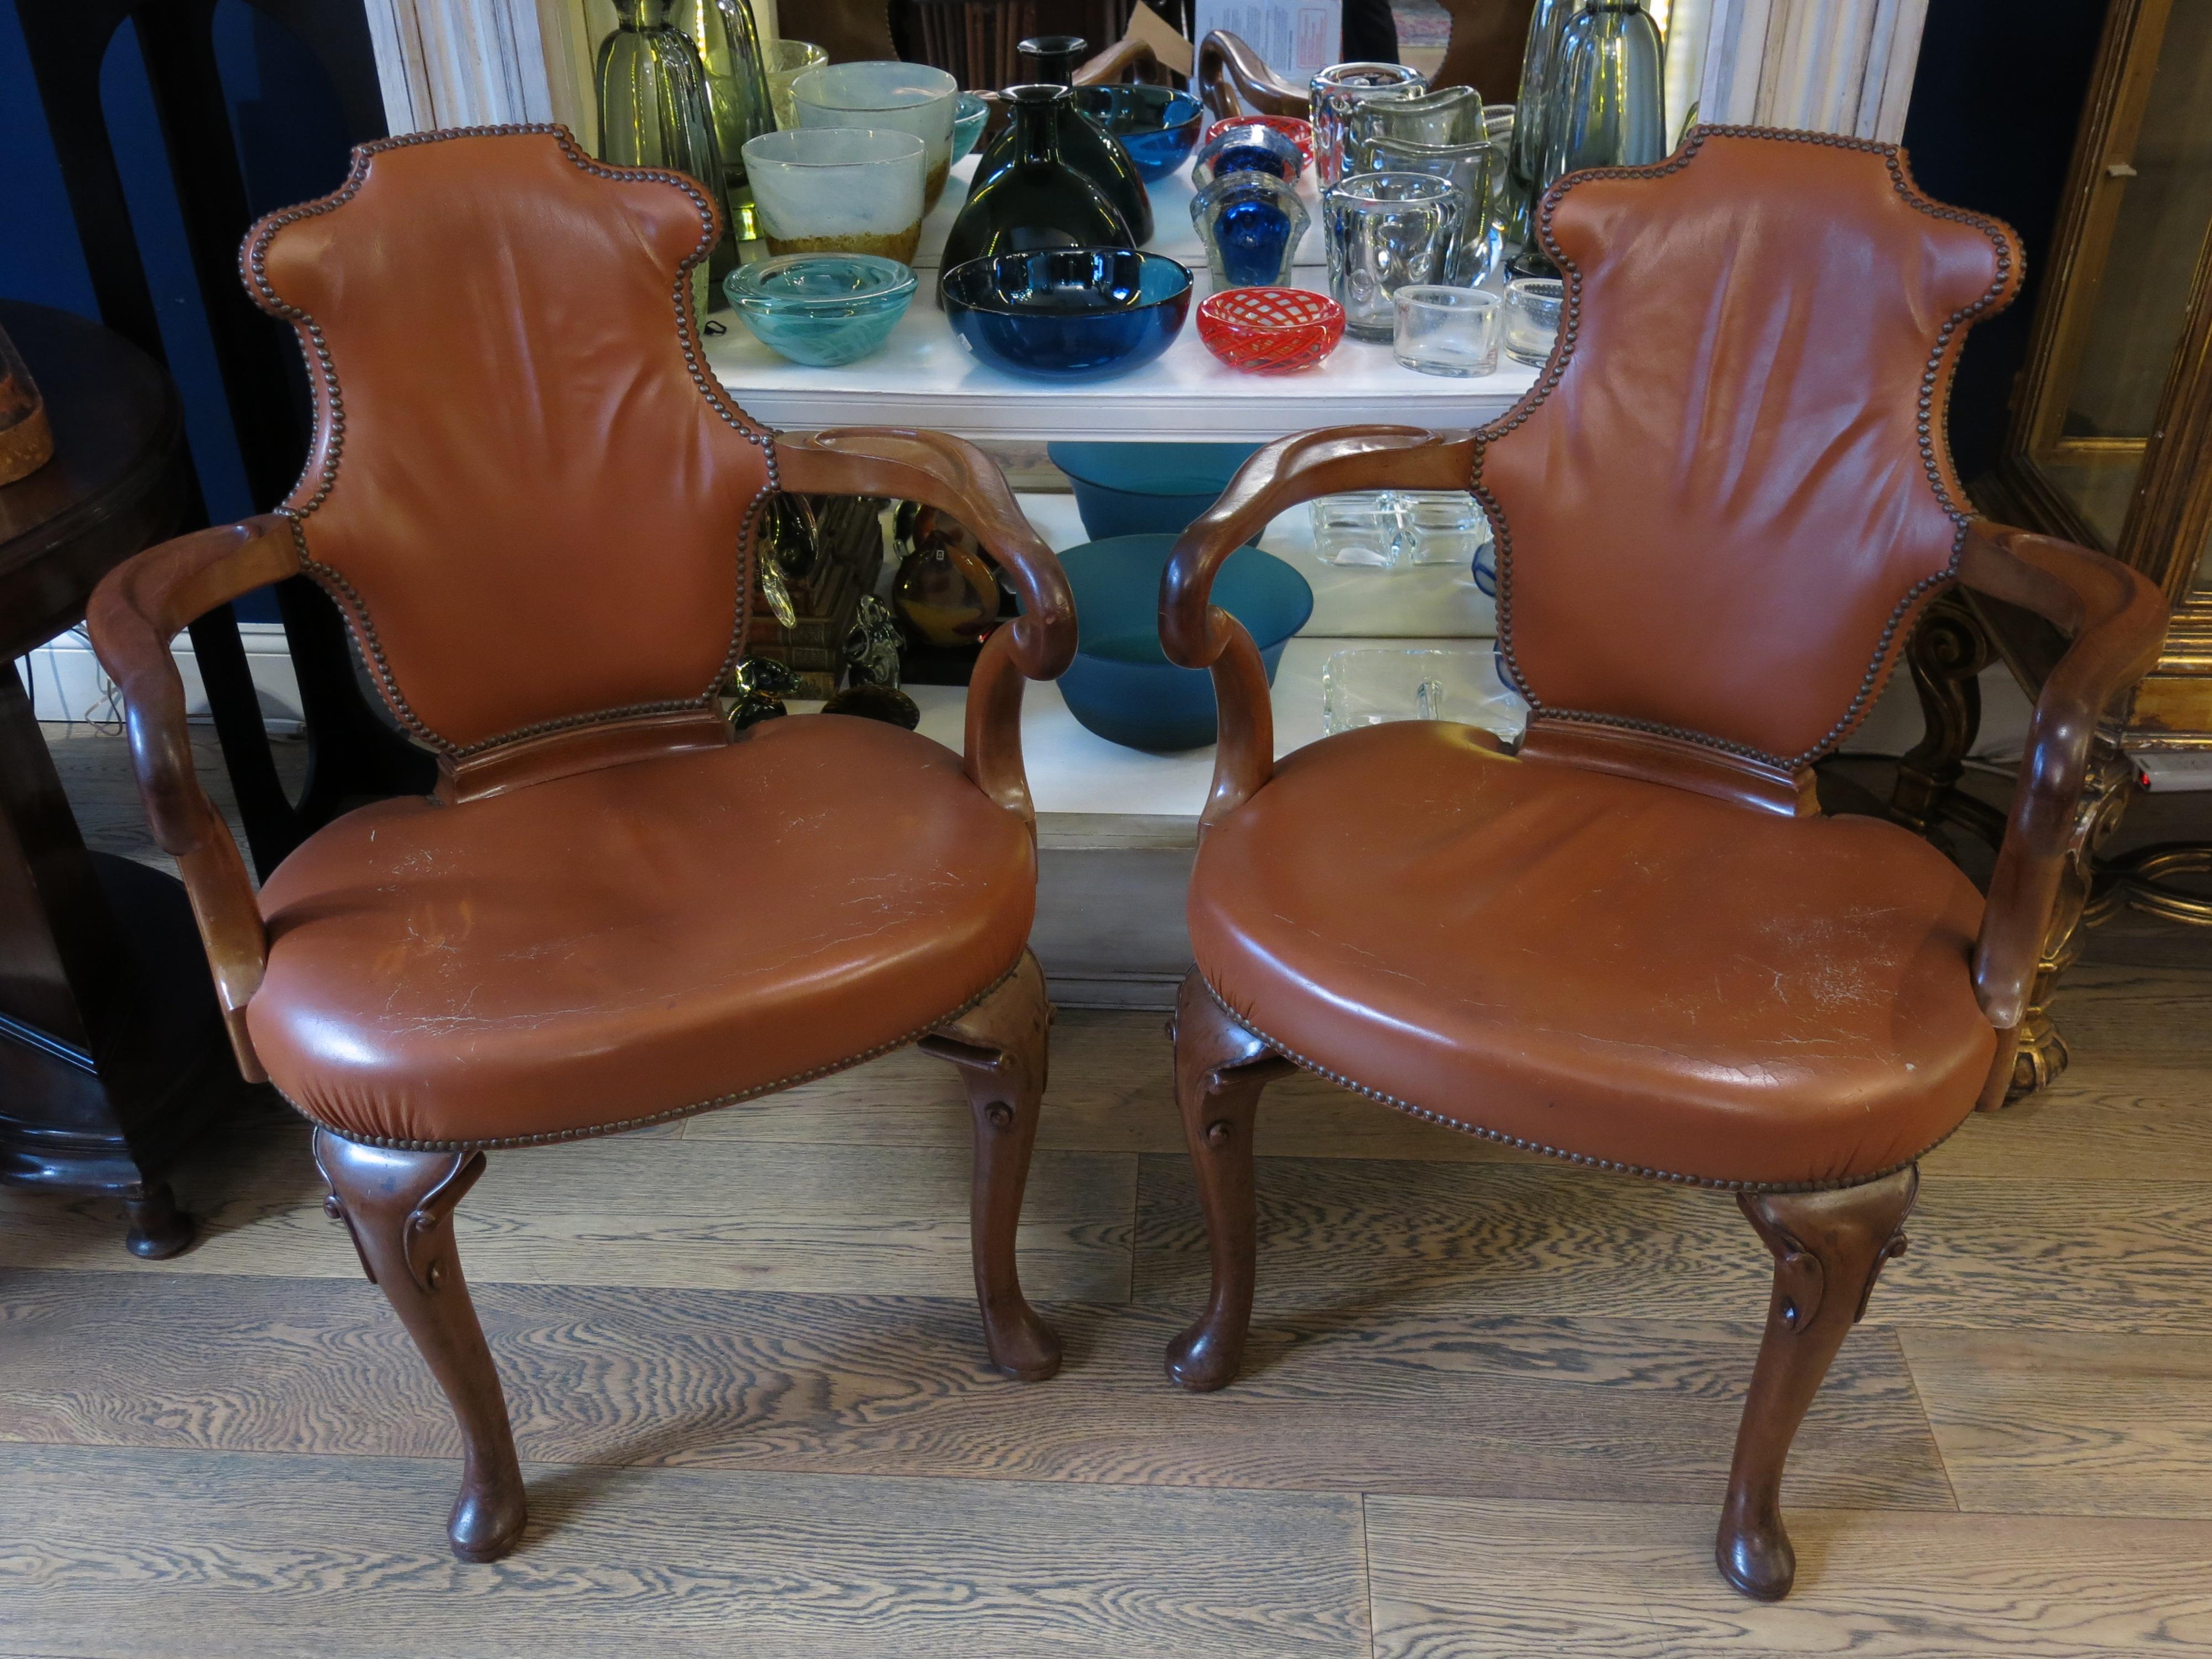 Entrez dans un confort luxueux avec cette paire de fauteuils en cuir de style Queen Anne. Ces pièces intemporelles respirent la sophistication et l'élégance, incarnant le charme classique de l'esthétique Queen Anne. En très bon état, elles